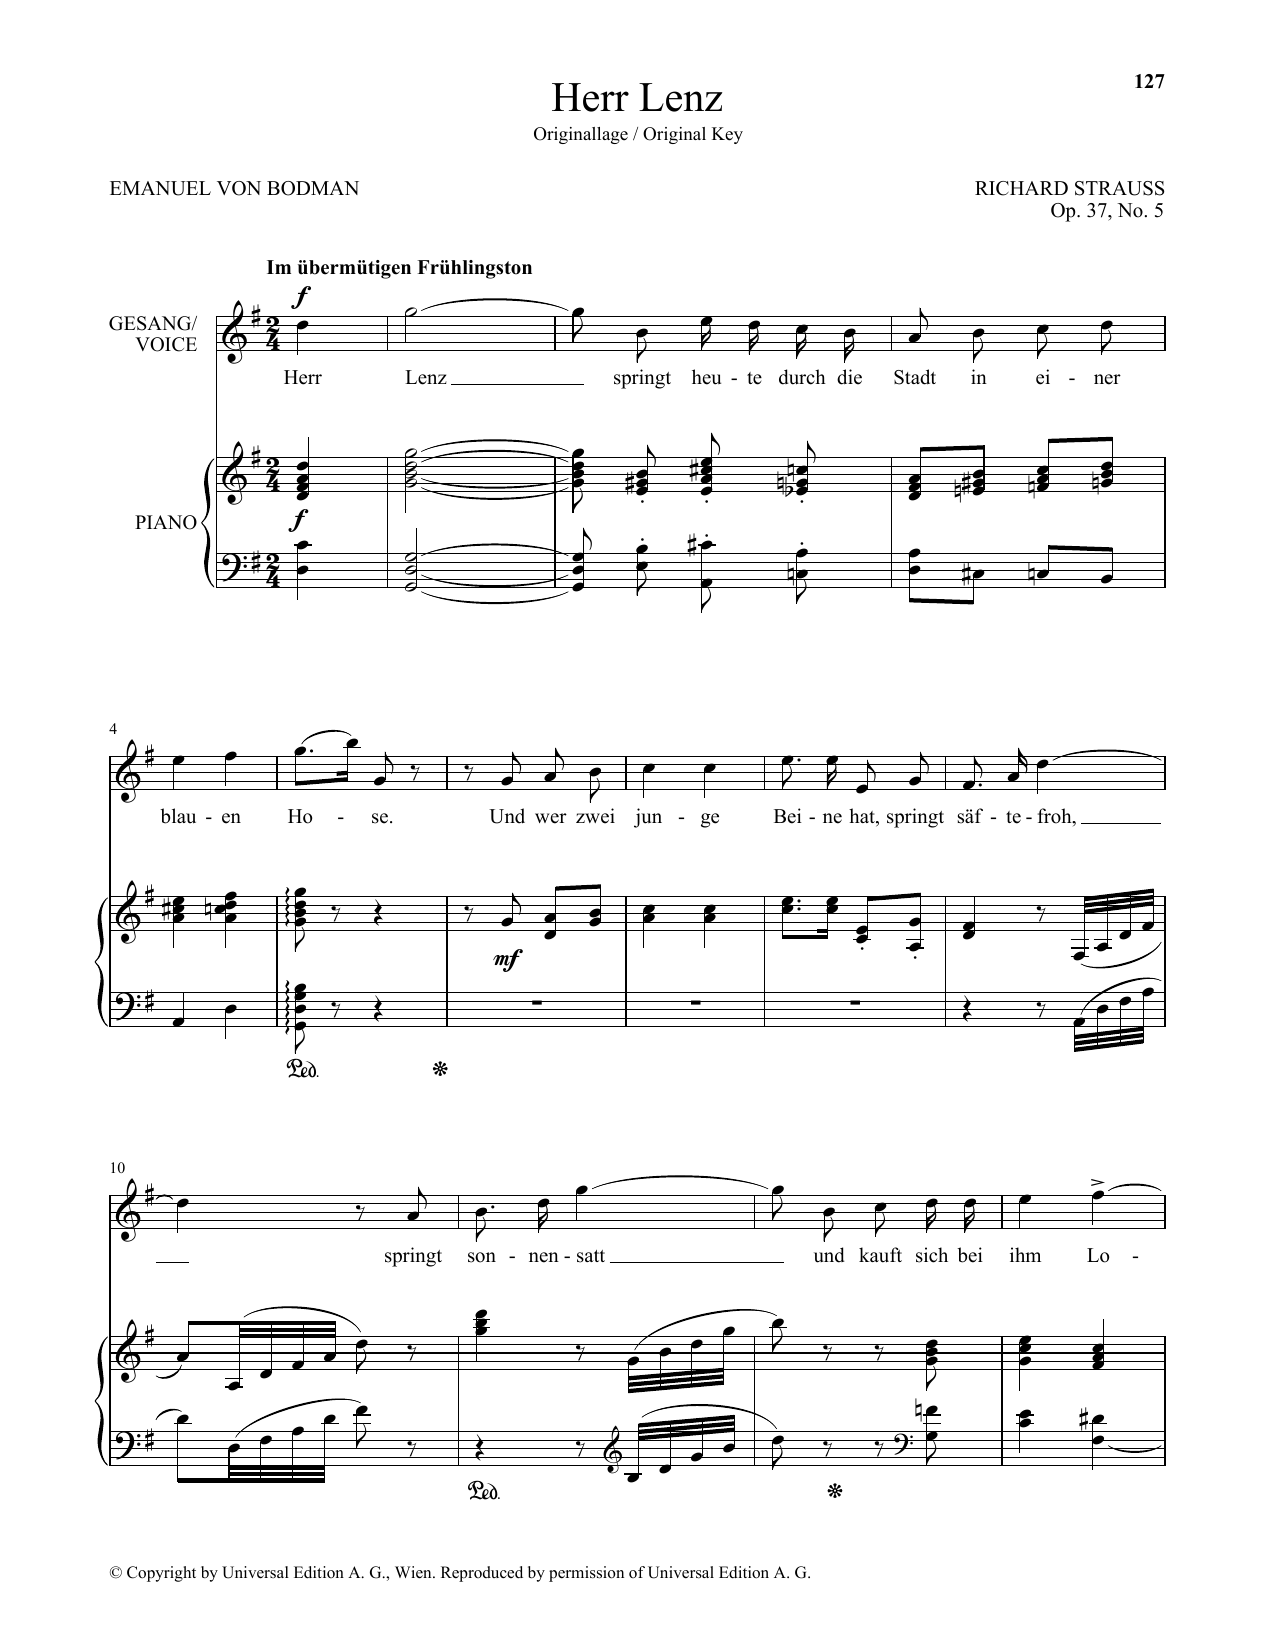 Download Richard Strauss Herr Lenz (High Voice) Sheet Music